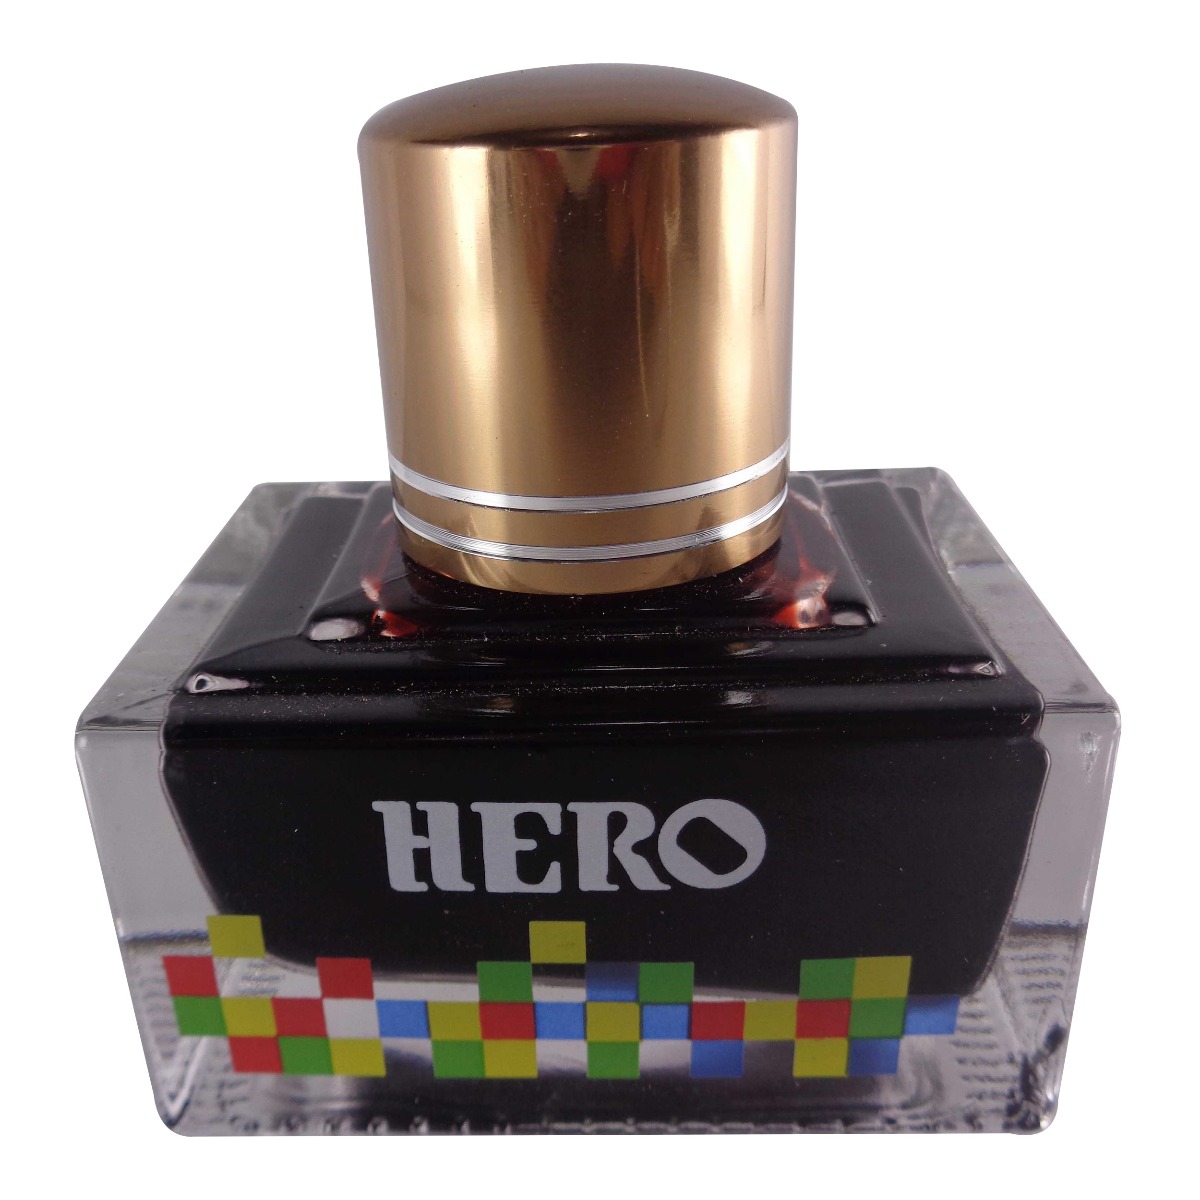 Hero No. 7104  Model: 70034 Extra color ink  Brown color ink bottle